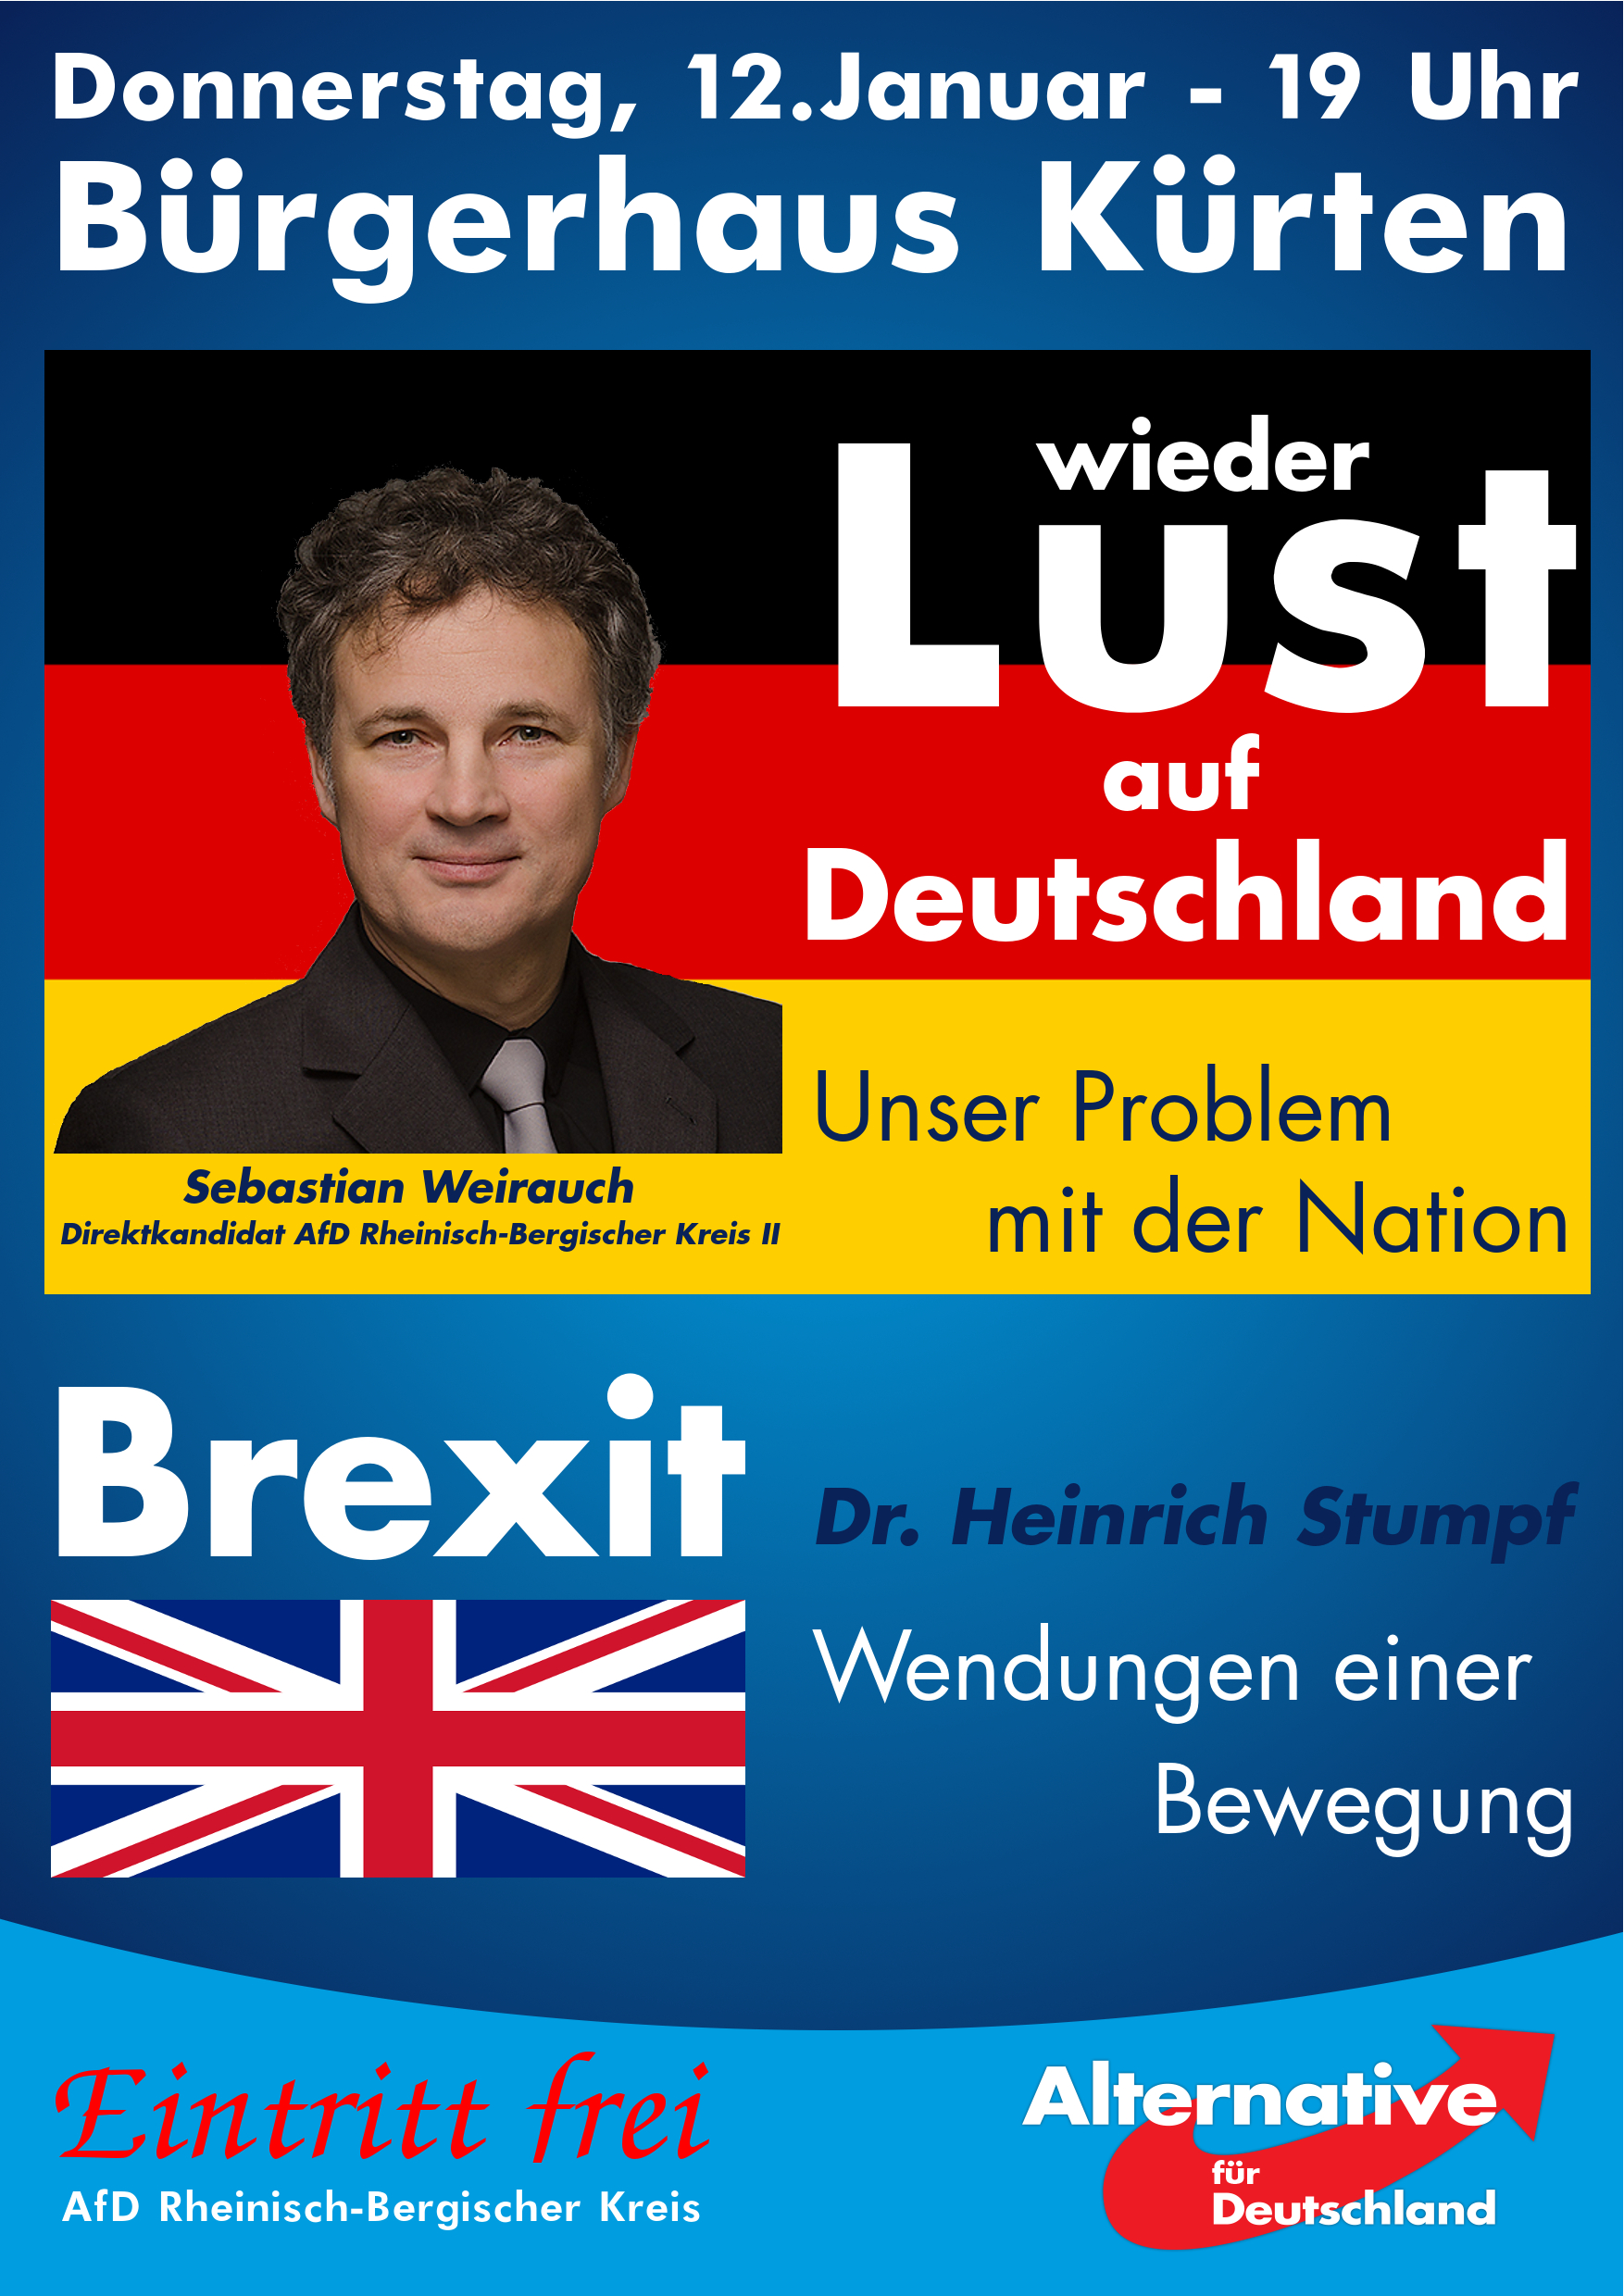 Sebastian Weirauch, unser Direktkandidat für die NRW-Wahl für den Rheinisch-Bergischen Kreis II 